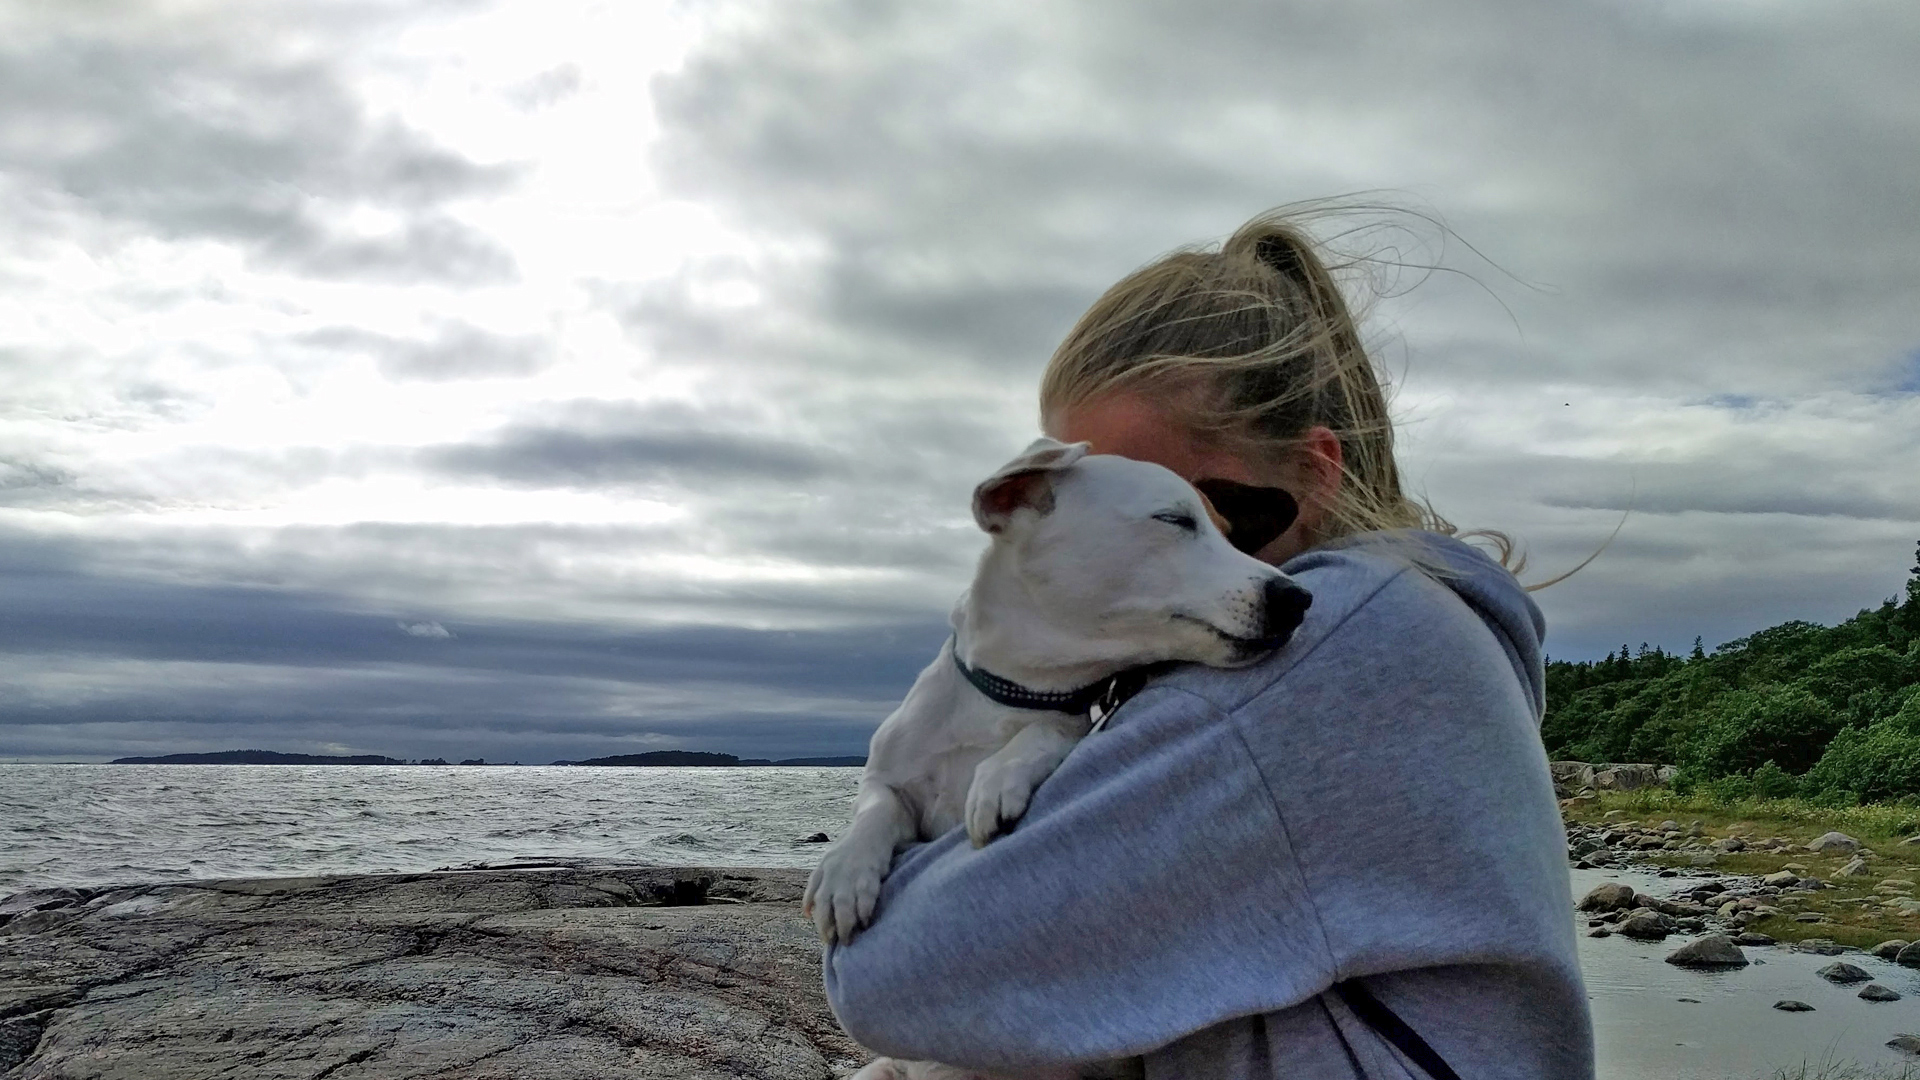 harmaapaitainen tyttö pitää koiraa sylissään tuulisella rantakalliolla